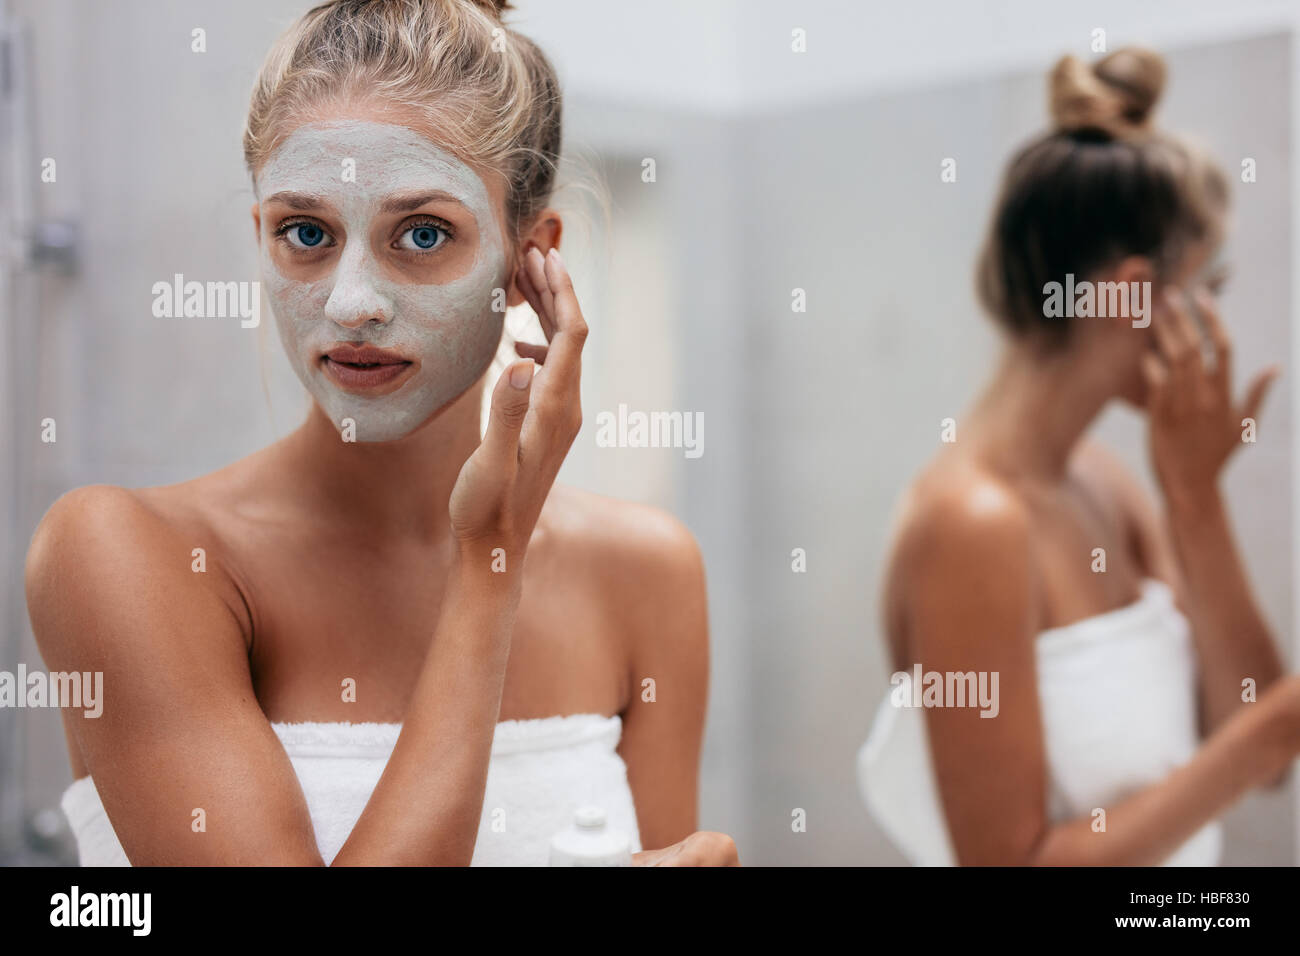 Schuss von schönen jungen Frau dabei Schönheitsbehandlung auf ihre Gesichtshaut hautnah. Weibliche Gesichtsmaske in Bad anwenden. Stockfoto